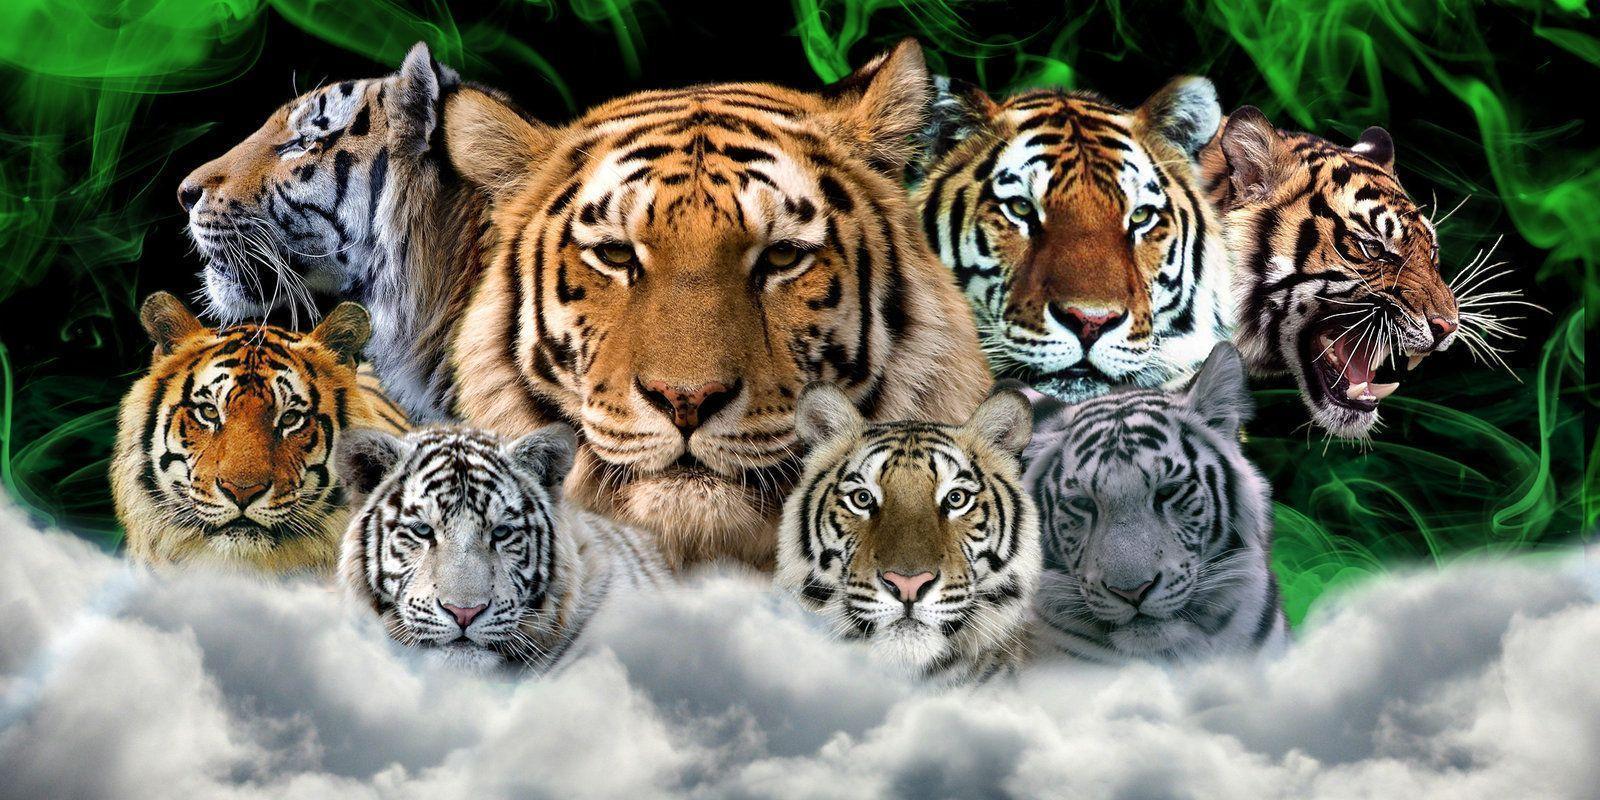 Tiger family wallpaper tiger